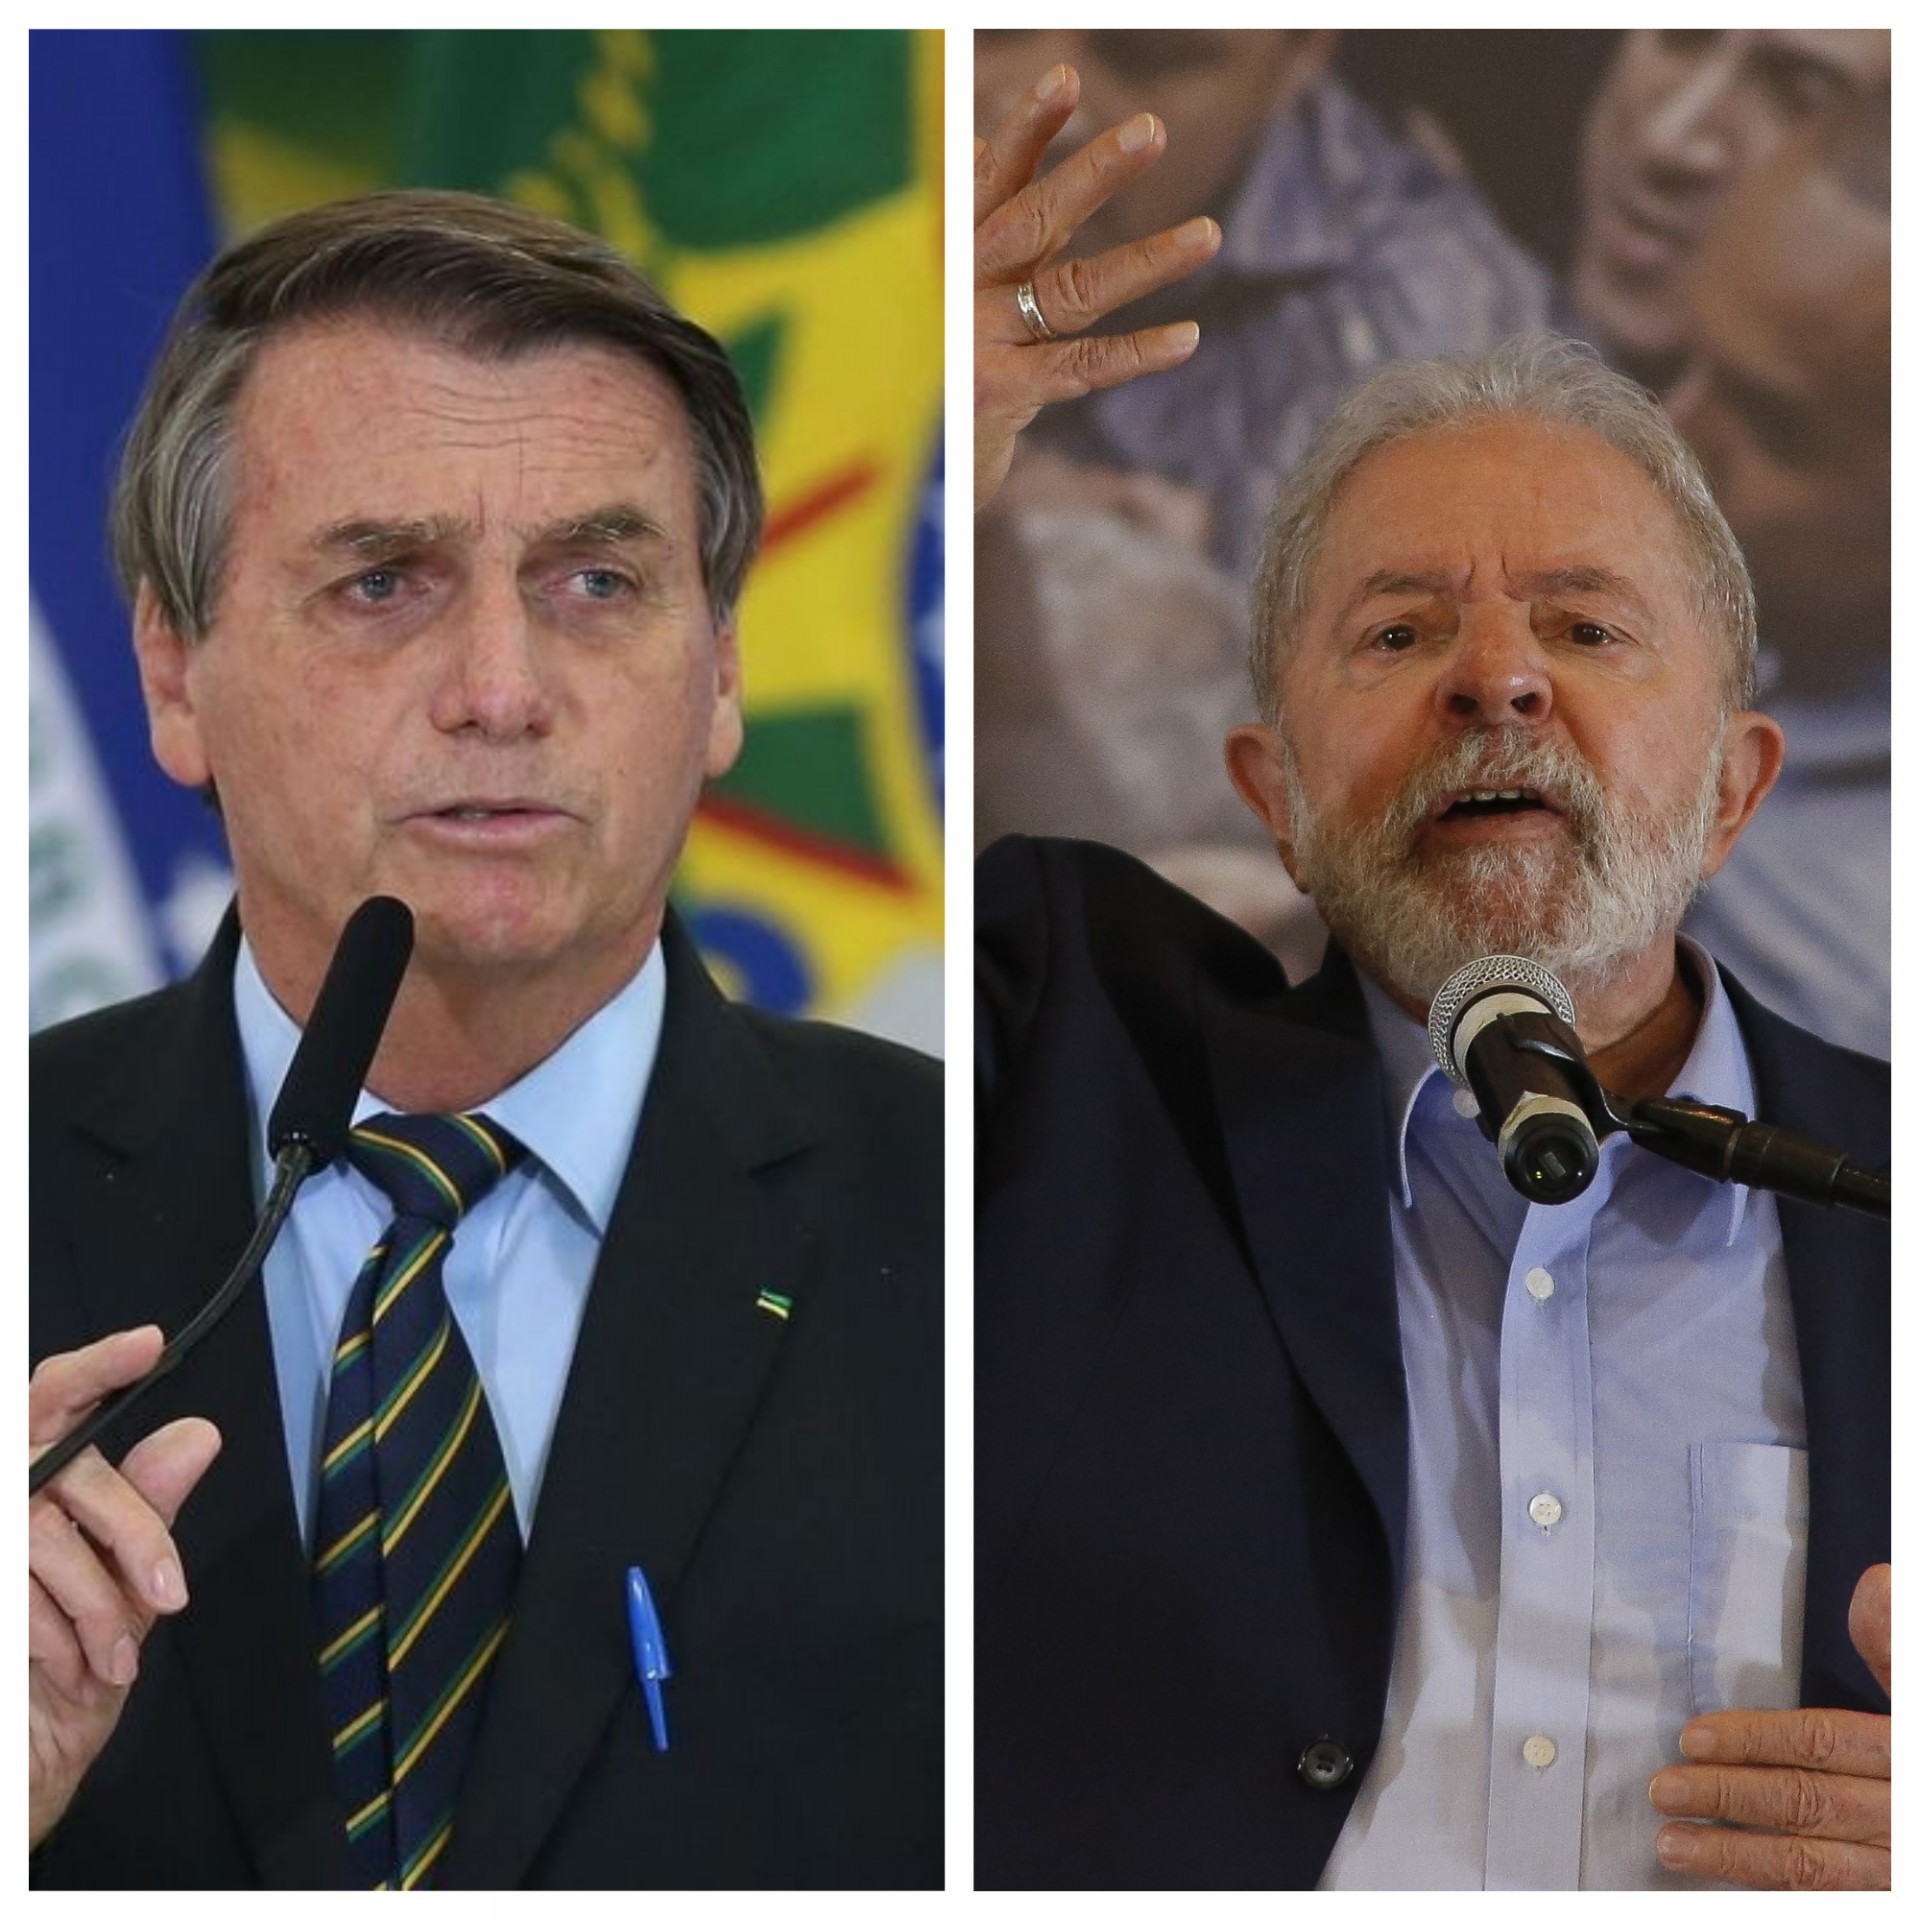 Bolsonaro e Lula são os principais candidatos na disputa pela presidência da República (Foto: Bolsonaro: Agência Brasil / Lula: MIGUEL SCHINCARIOL / AFP)